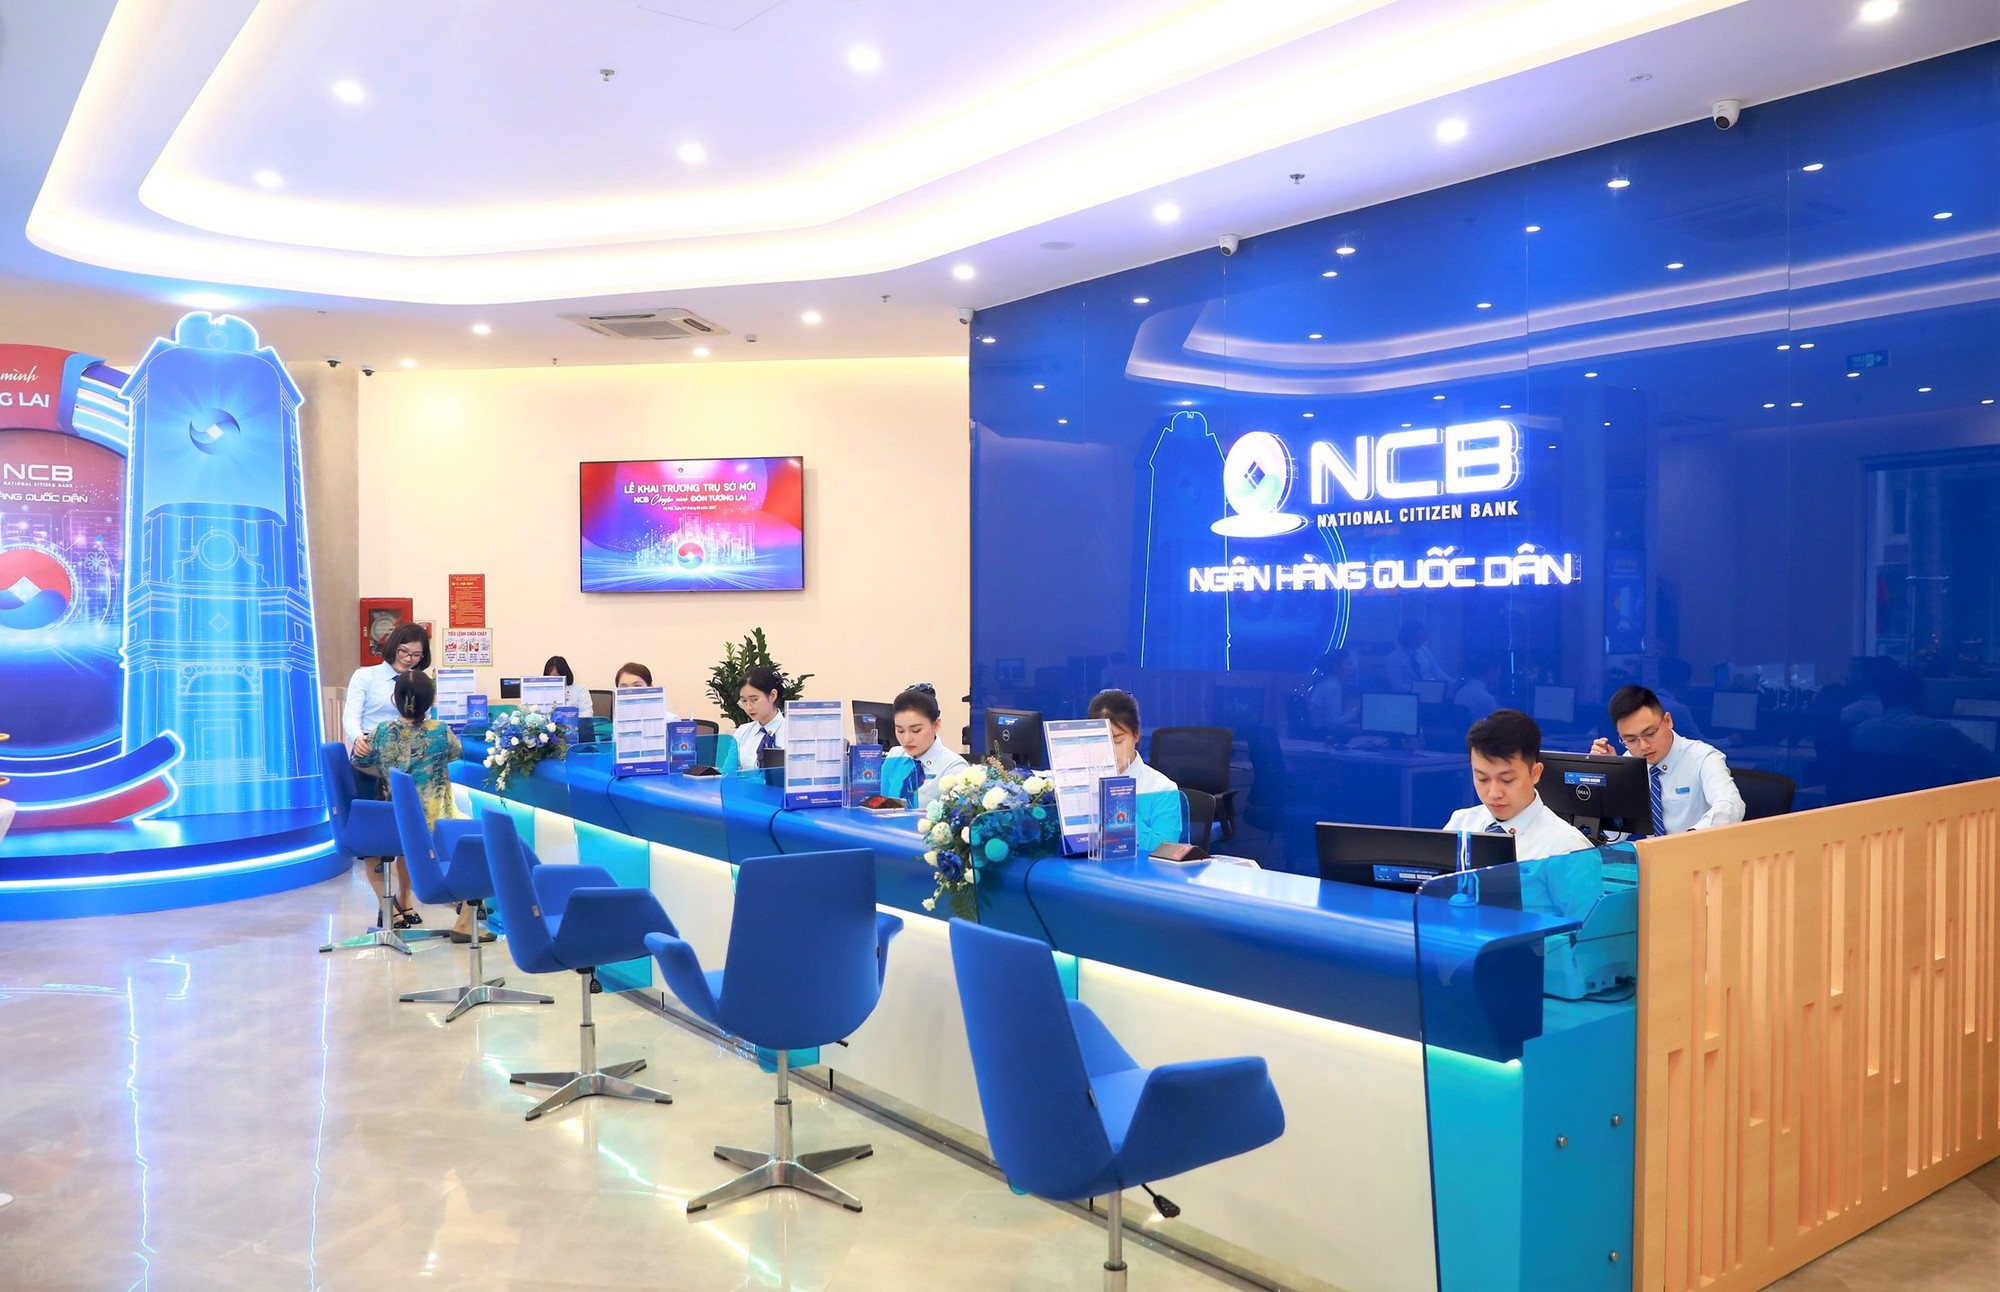 Ngân hàng NCB khai trương trụ sở mới - Ảnh 4.